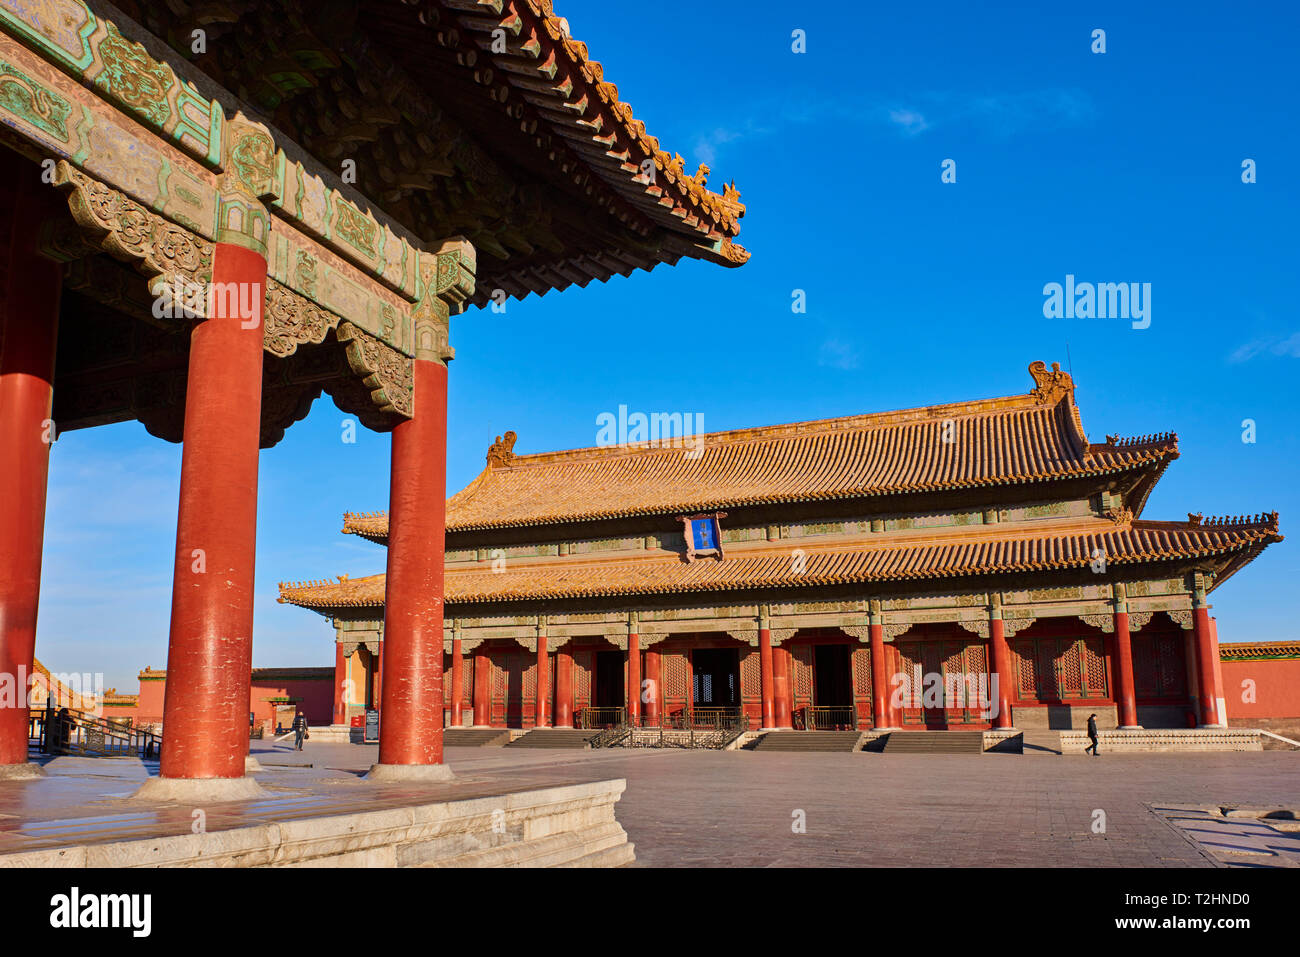 Hall de préserver l'harmonie dans l'arrière plan avec hall central de l'harmonie, la Cité Interdite, Beijing, Chine, l'Asie de l'Est Banque D'Images